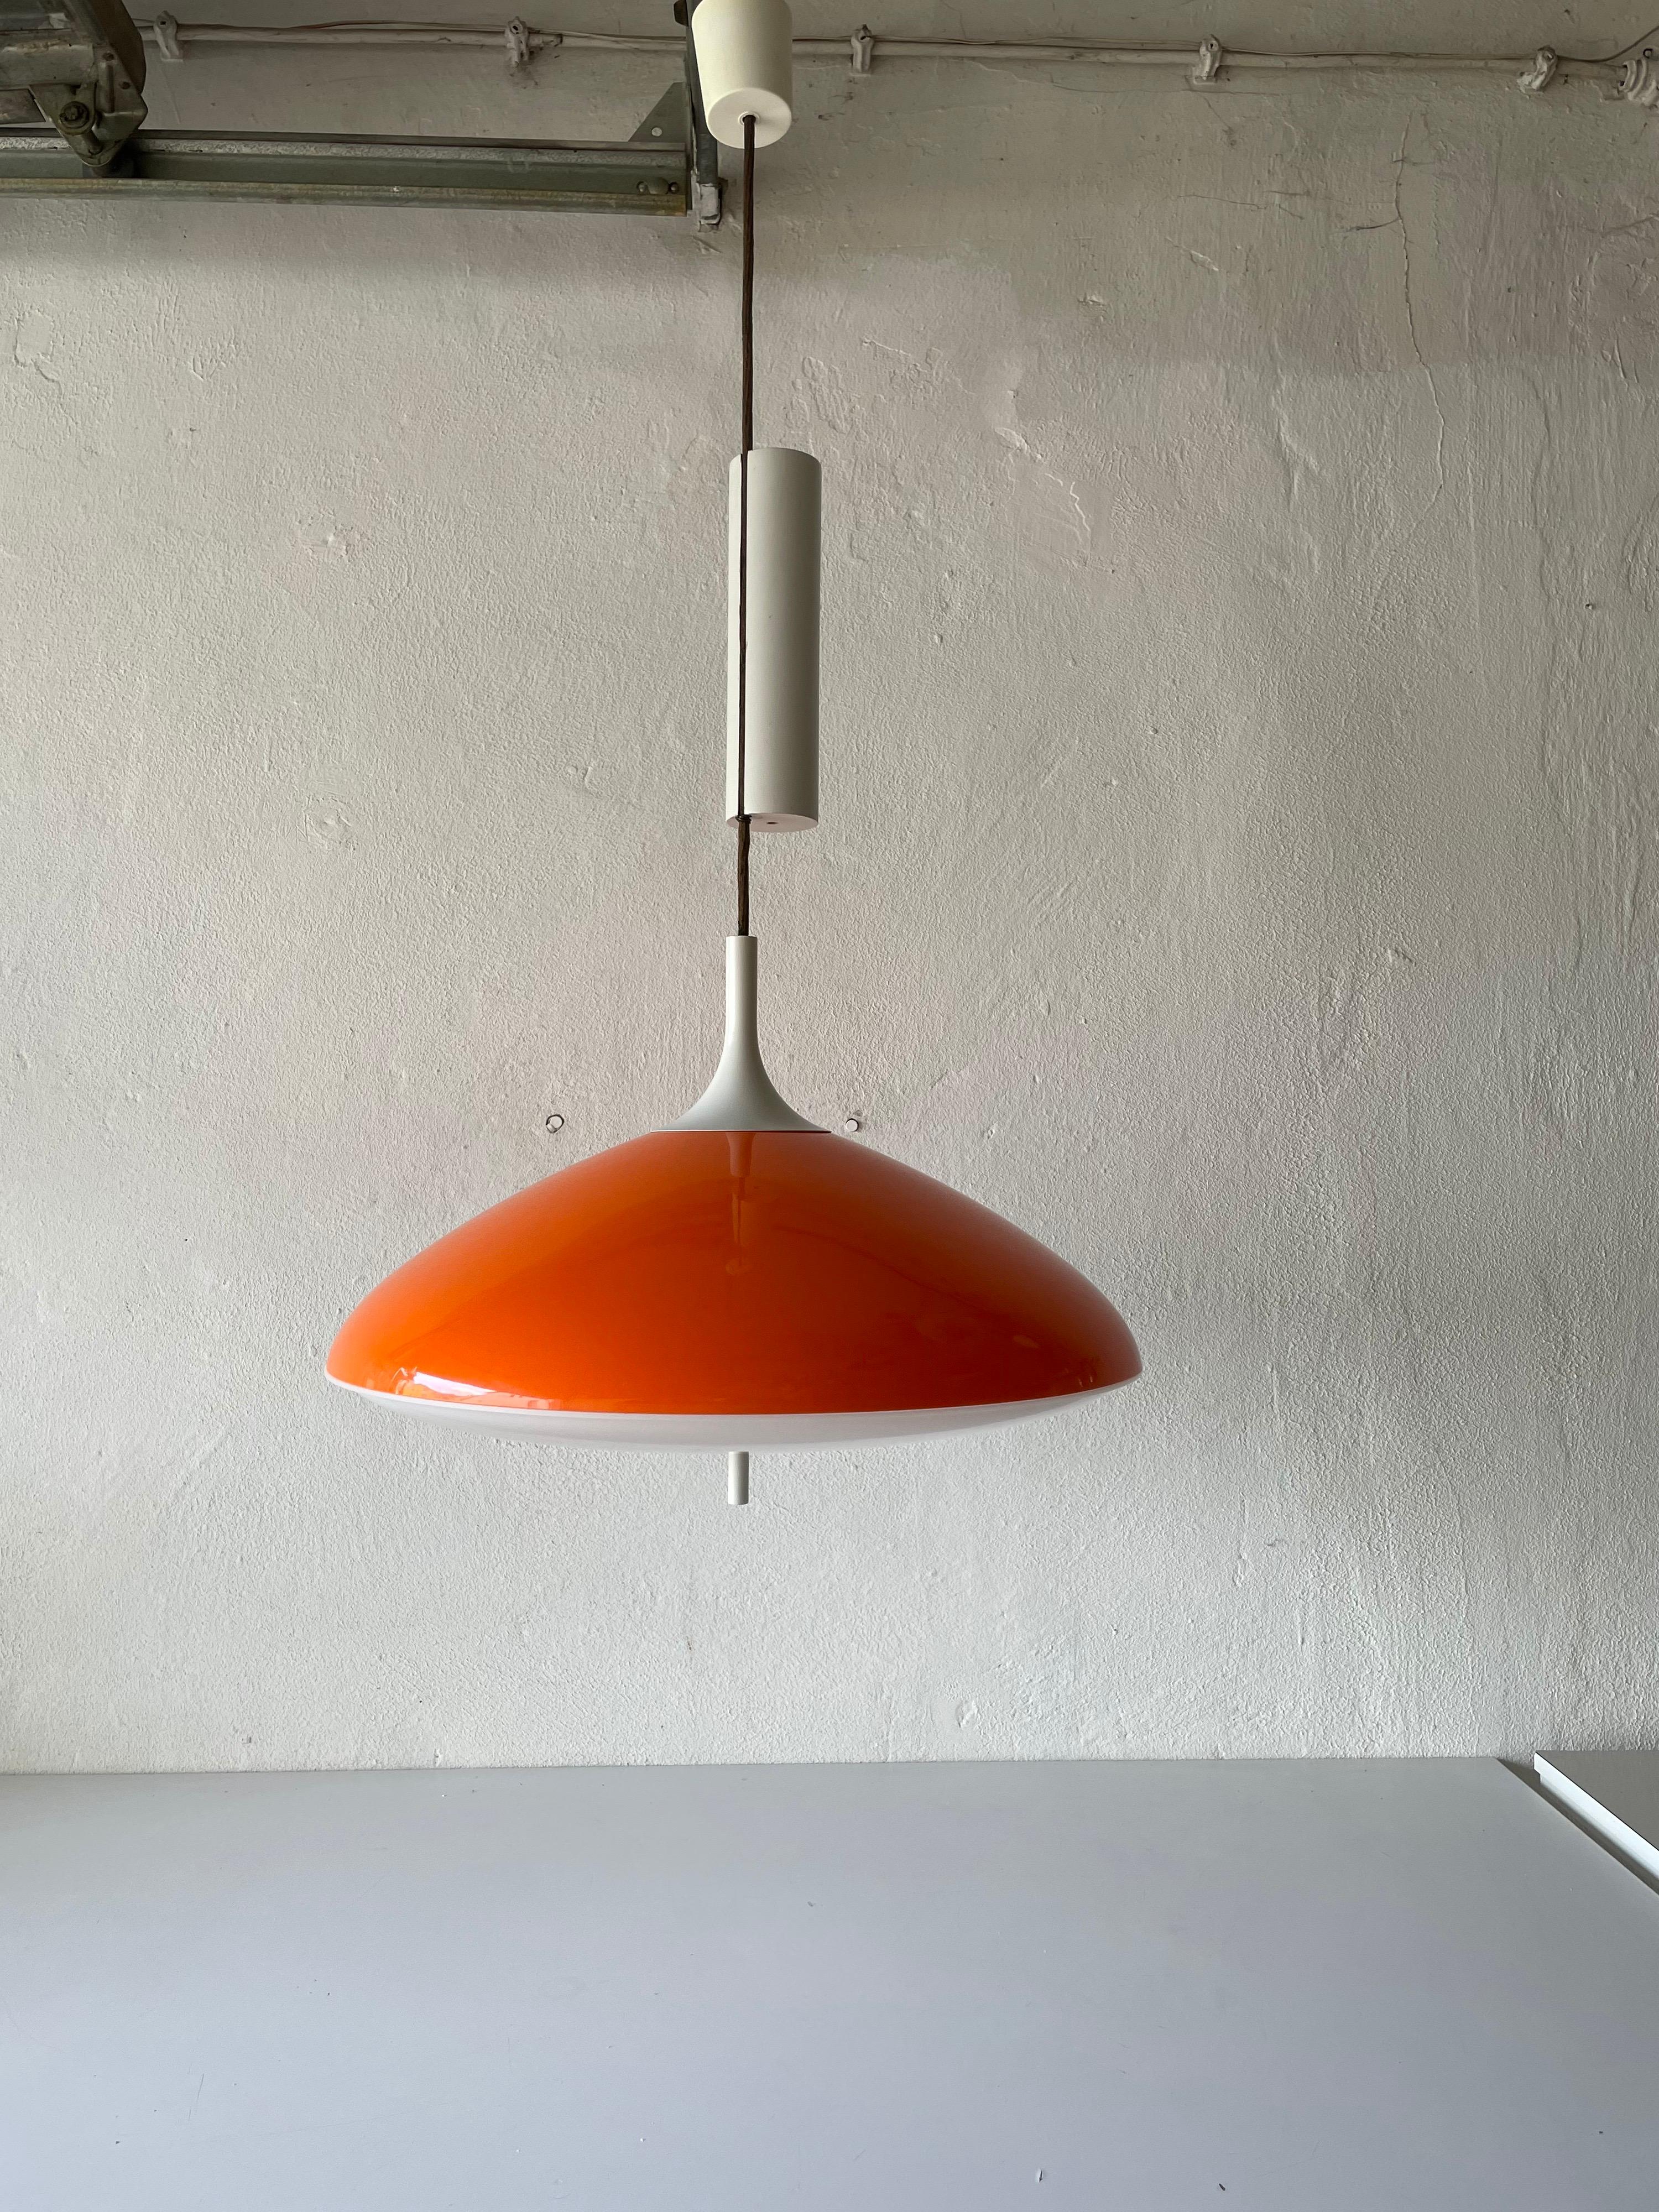 Pop Art große orangefarbene Deckenleuchte von Temde, 1960er Jahre, Schweiz

Der Lampenschirm ist in sehr gutem Vintage-Zustand.
Teil in der Mitte aus Holz

Diese Lampe funktioniert mit einer E27-Glühbirne. Maximal 100W
Verkabelt und geeignet